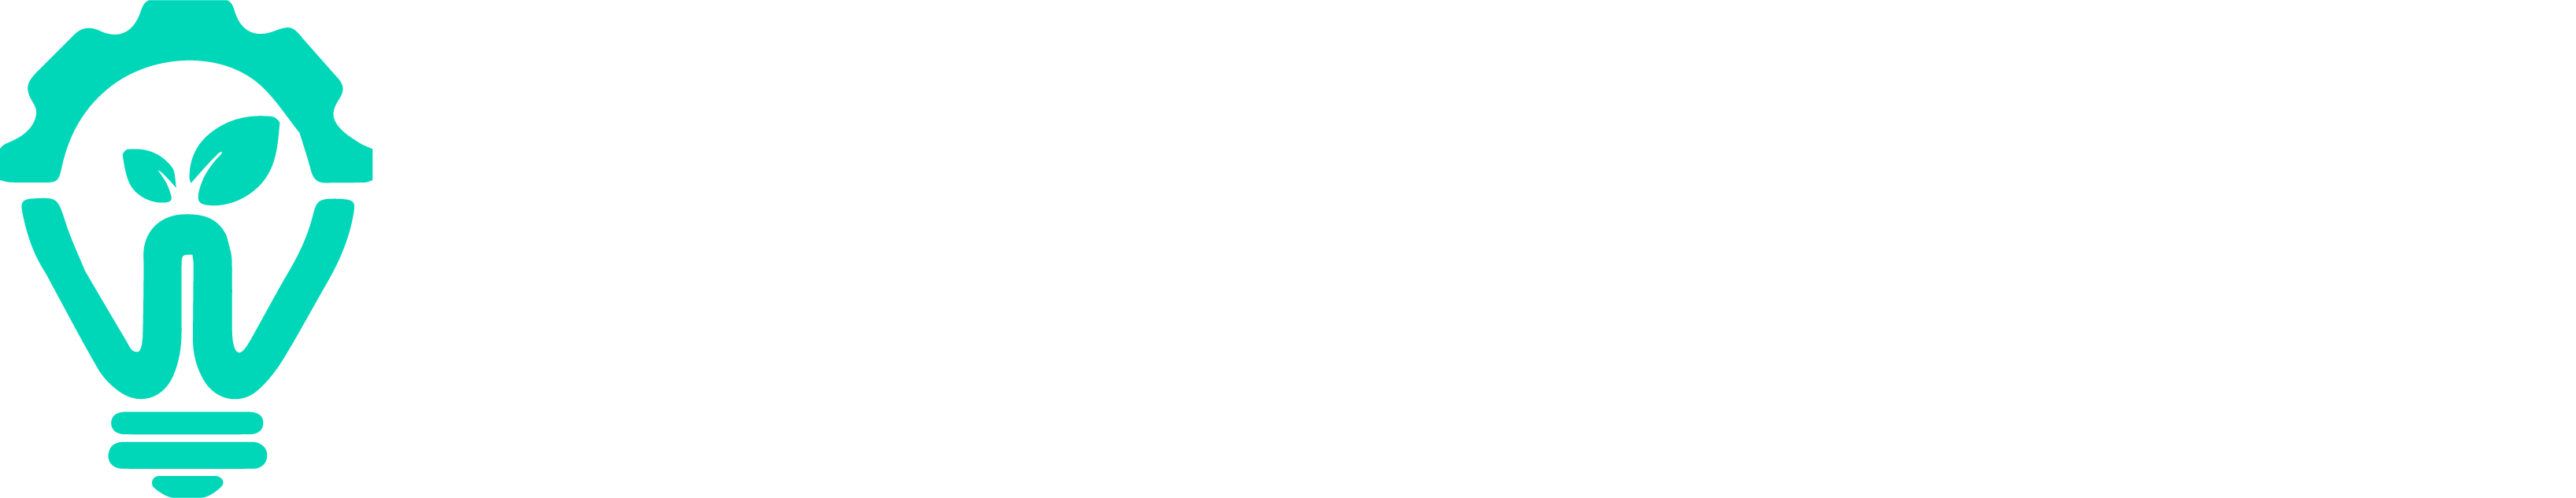 smarklabs logo white